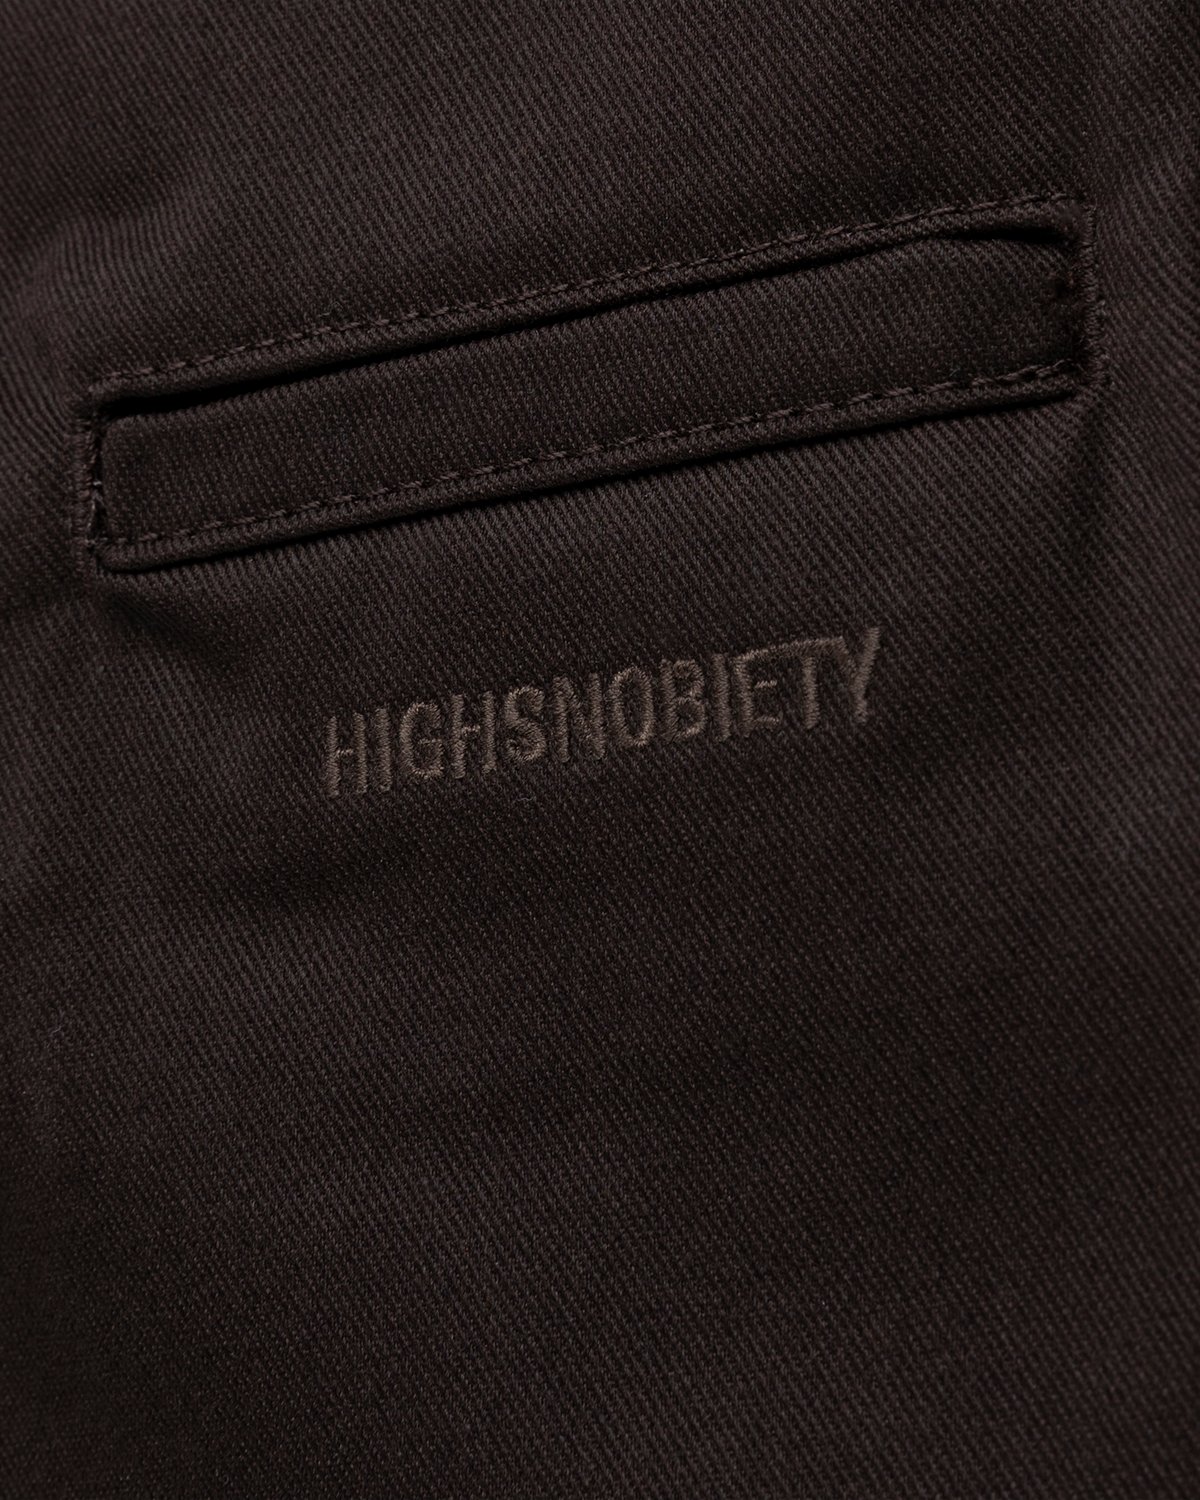 Highsnobiety x Dickies - Pleated Work Pants Dark Brown - Clothing - Brown - Image 4